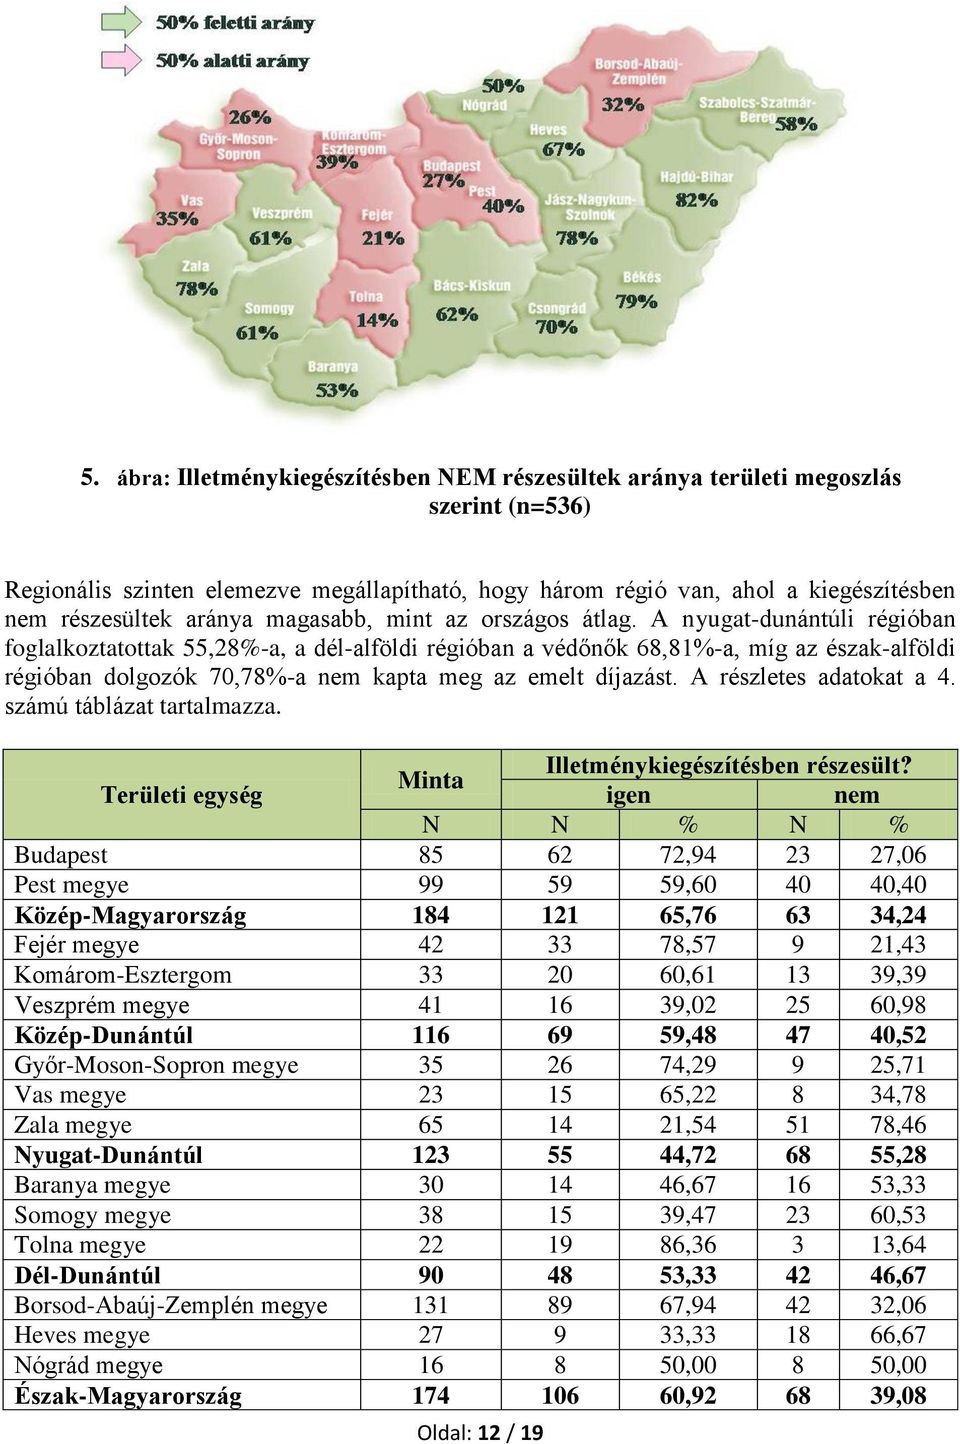 A nyugat-dunántúli régióban foglalkoztatottak 55,28%-a, a dél-alföldi régióban a védőnők 68,81%-a, míg az észak-alföldi régióban dolgozók 70,78%-a nem kapta meg az emelt díjazást.